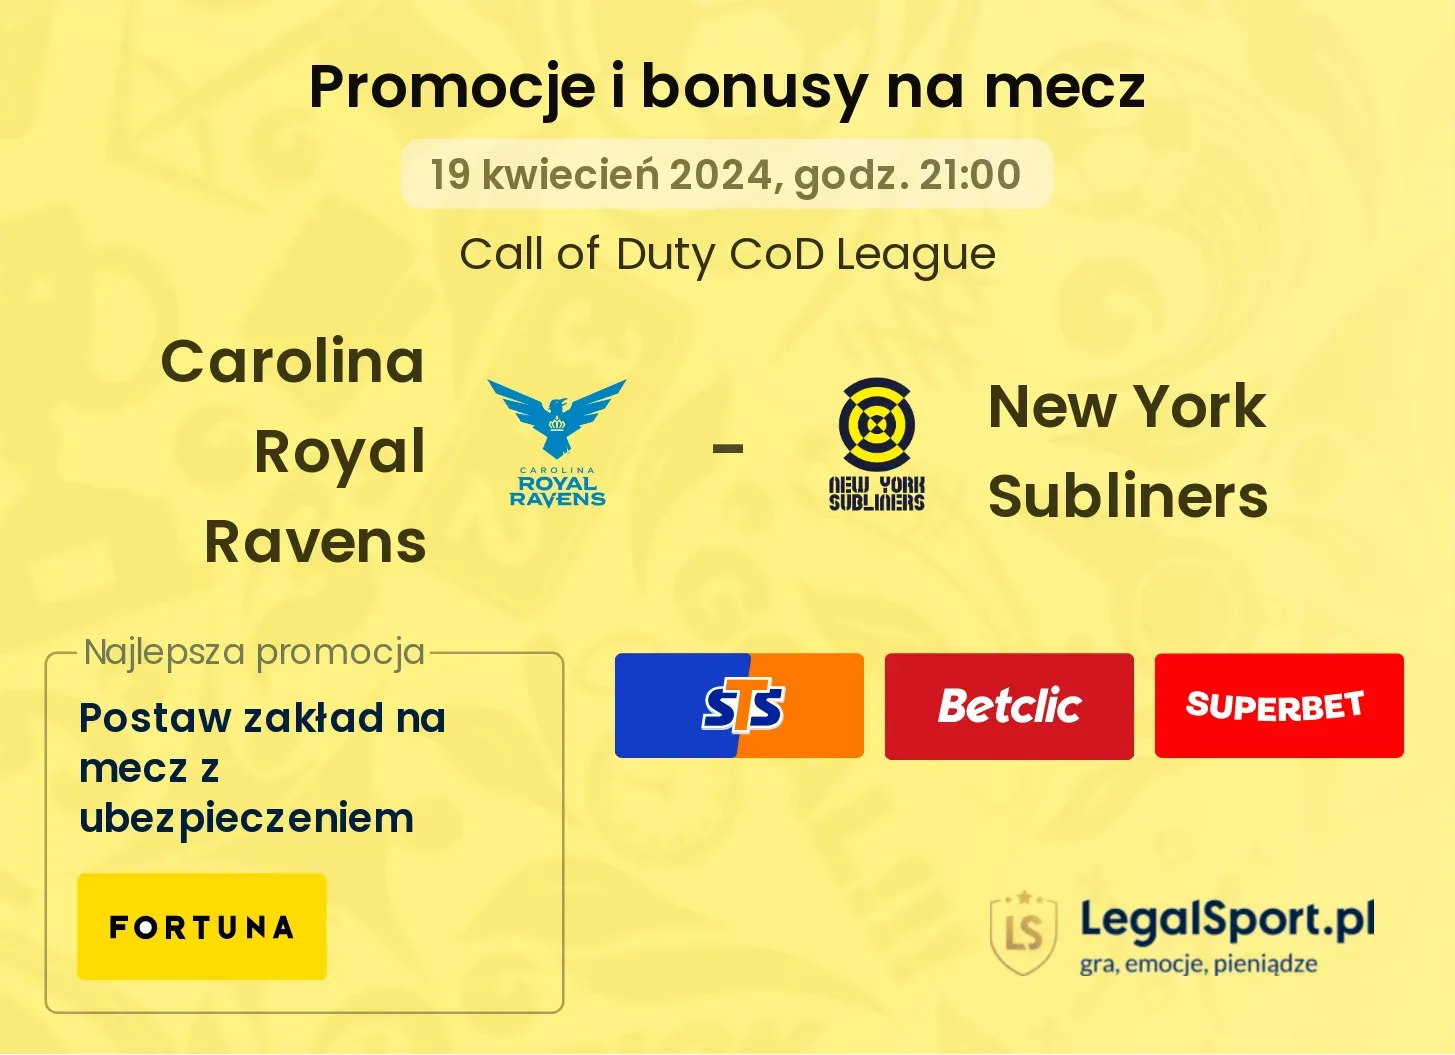 Carolina Royal Ravens - New York Subliners promocje bonusy na mecz